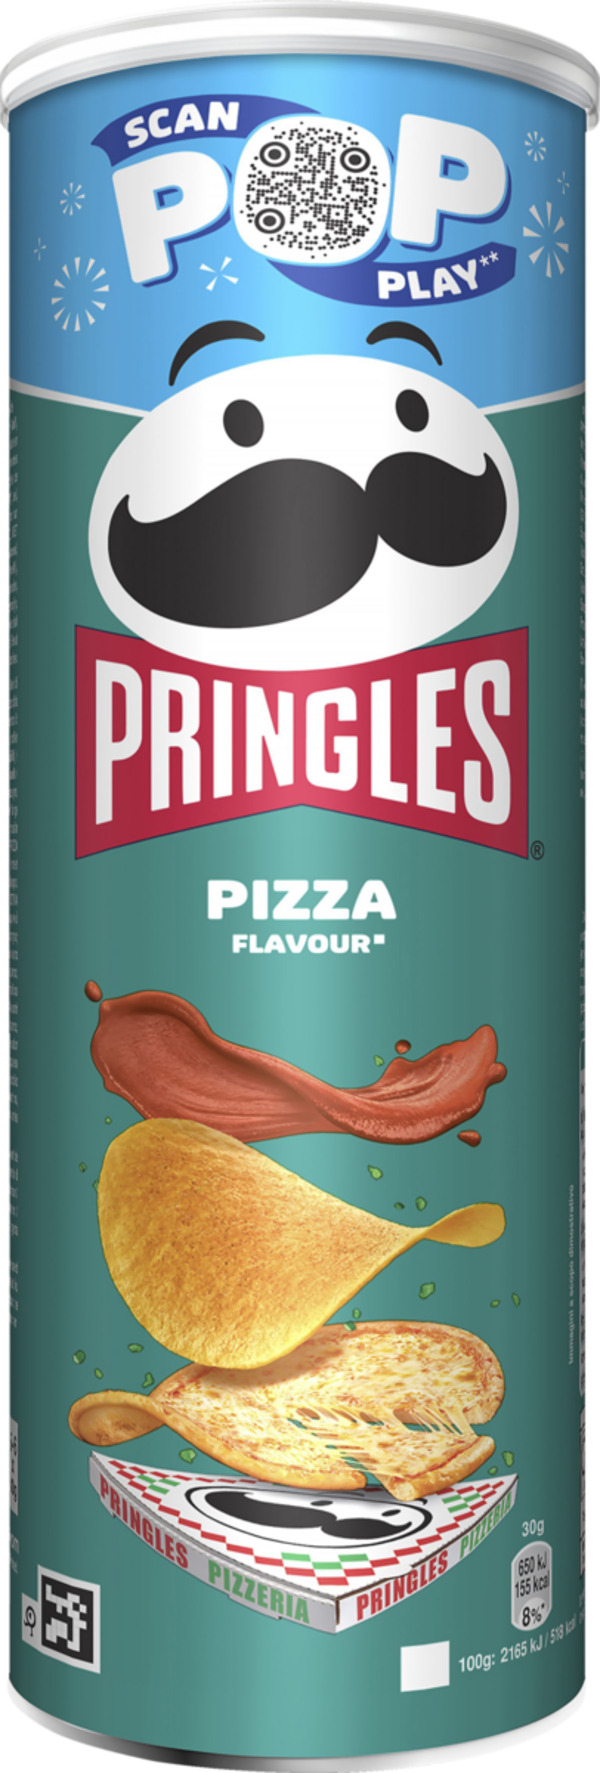 Bild 1 von Pringles Pizza Flavour Chips, 165 g